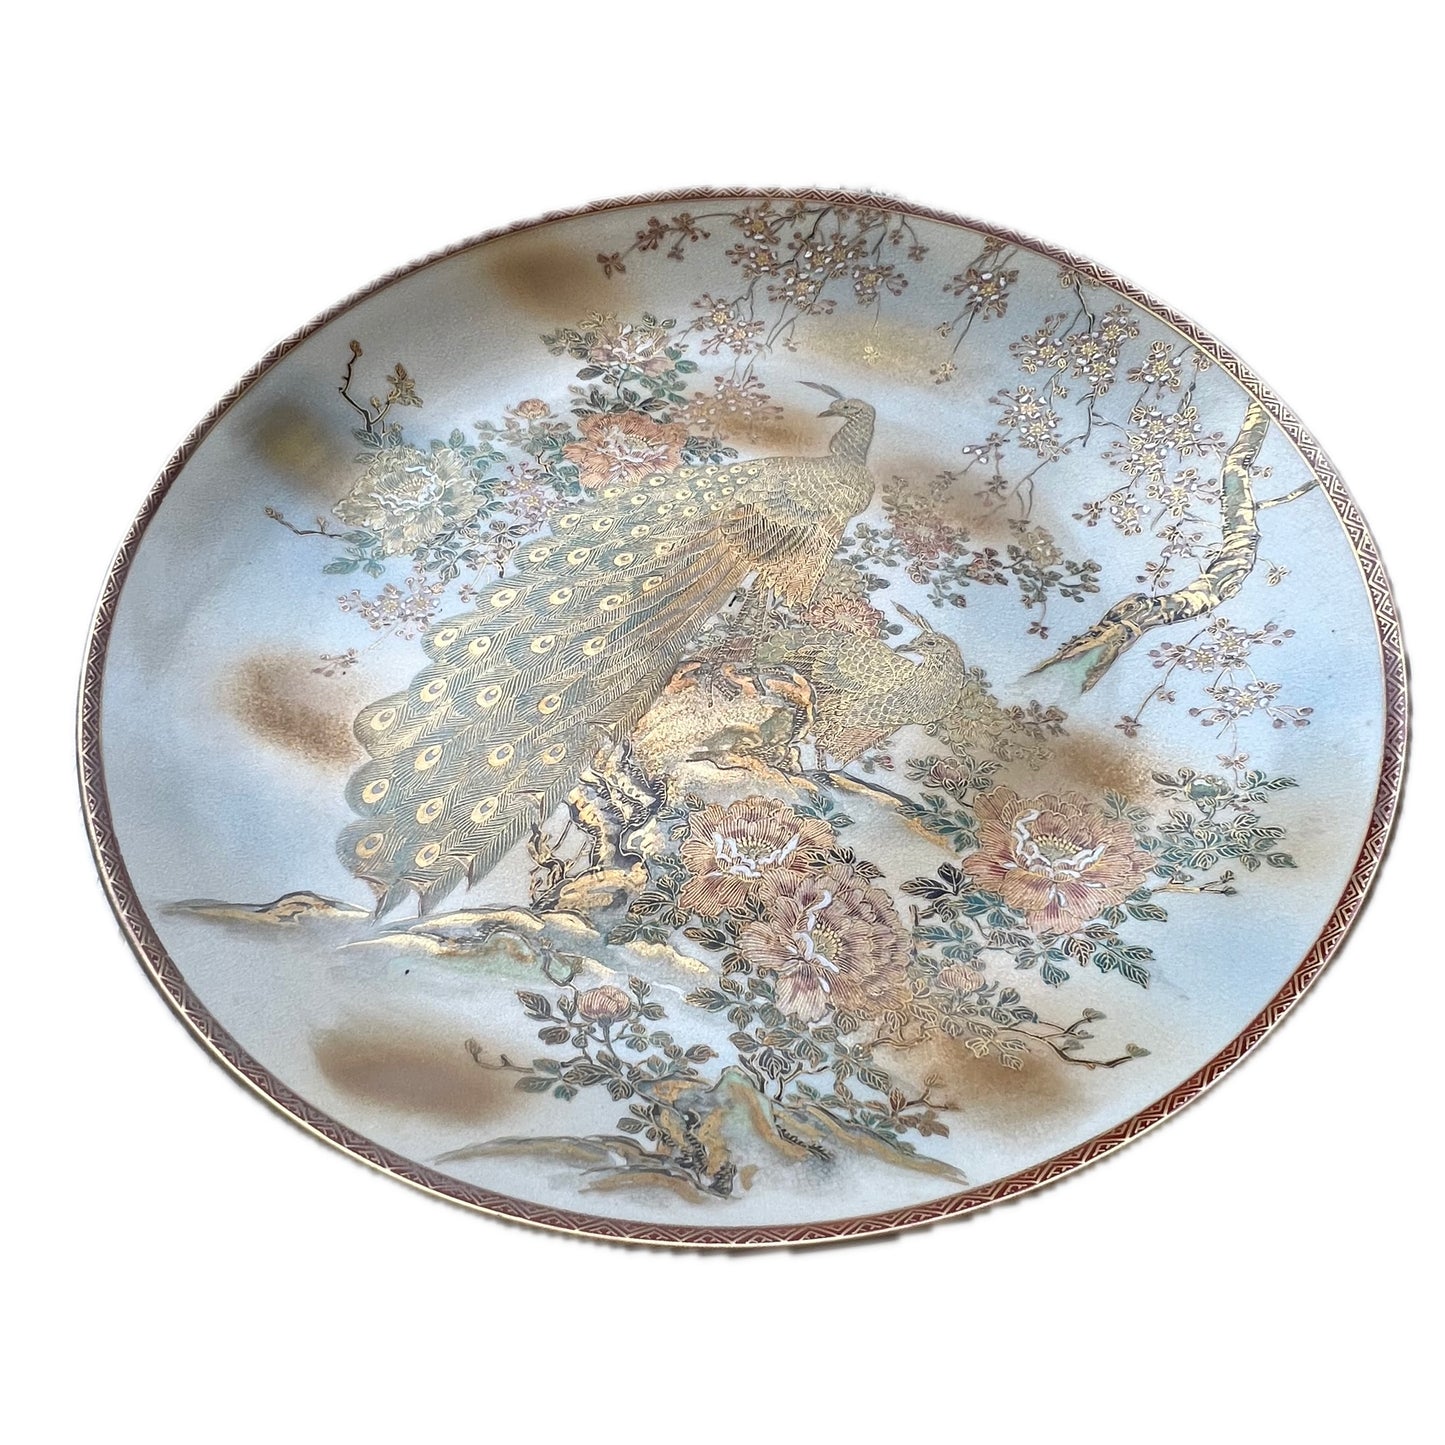 约明治末期至大正初年产的巨型日本萨摩瓷大盘